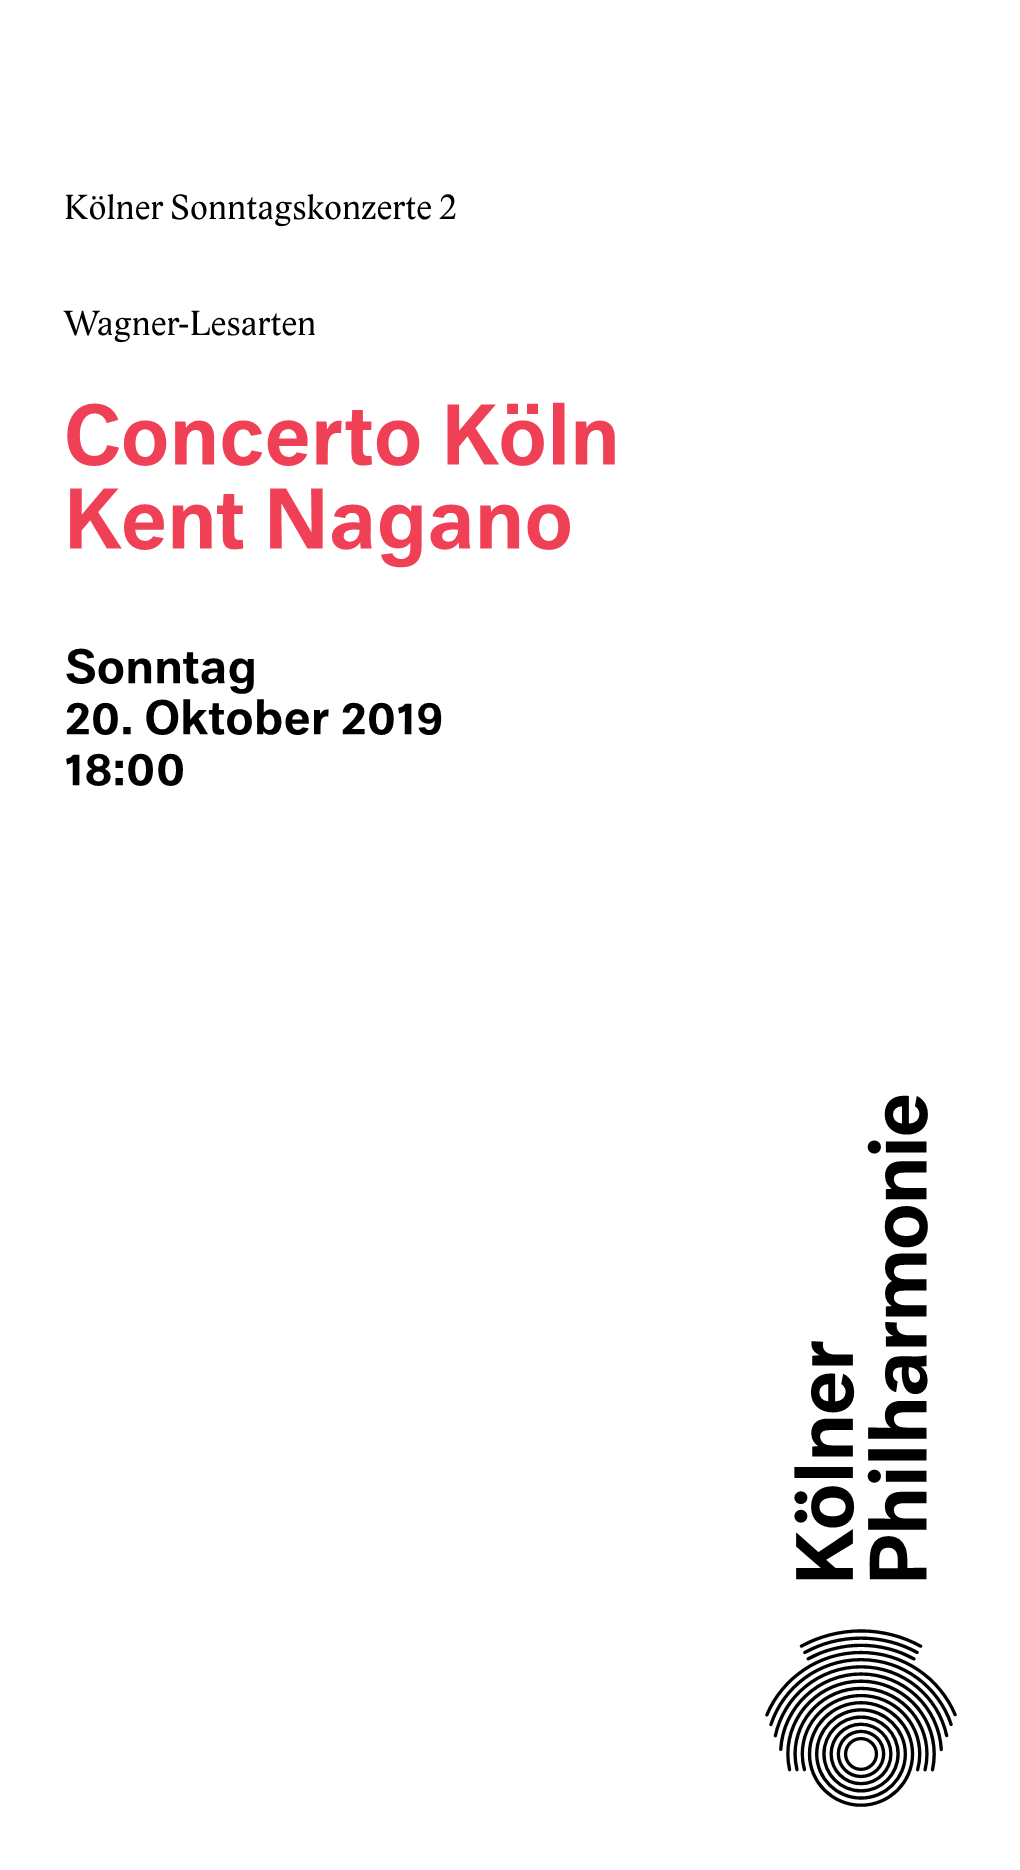 Concerto Köln Kent Nagano